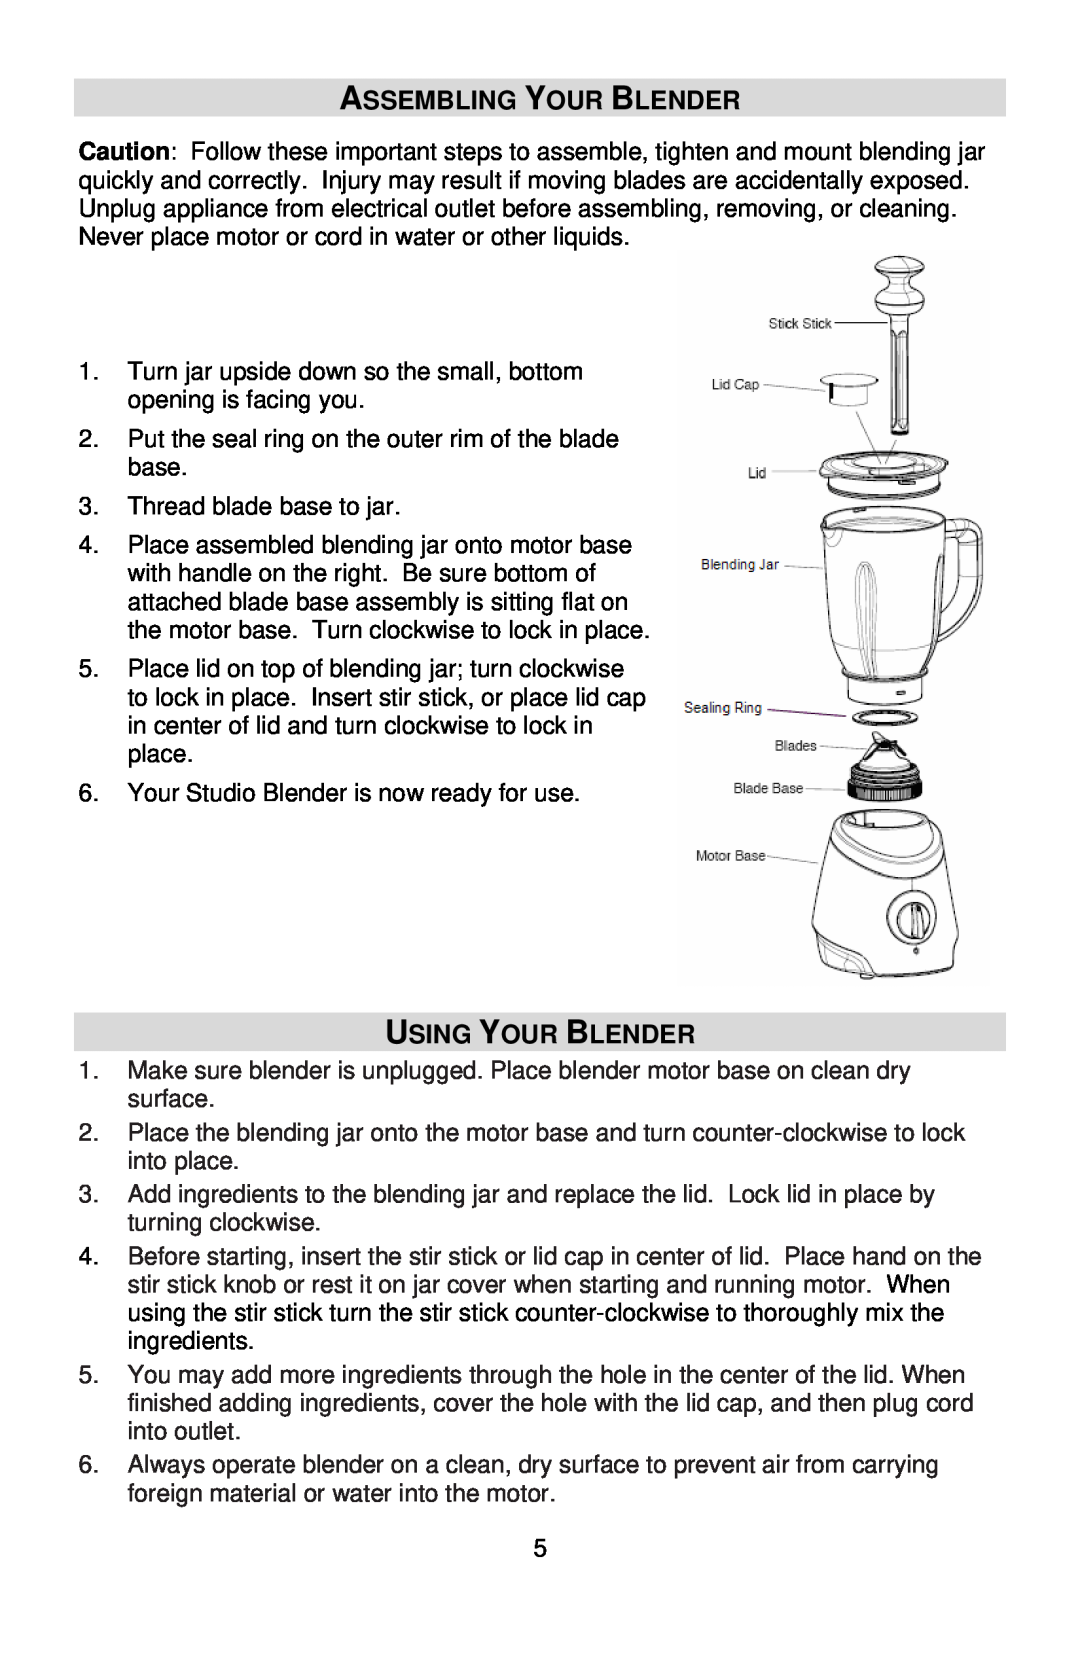 West Bend L5700 instruction manual Assembling Your Blender, Using Your Blender 